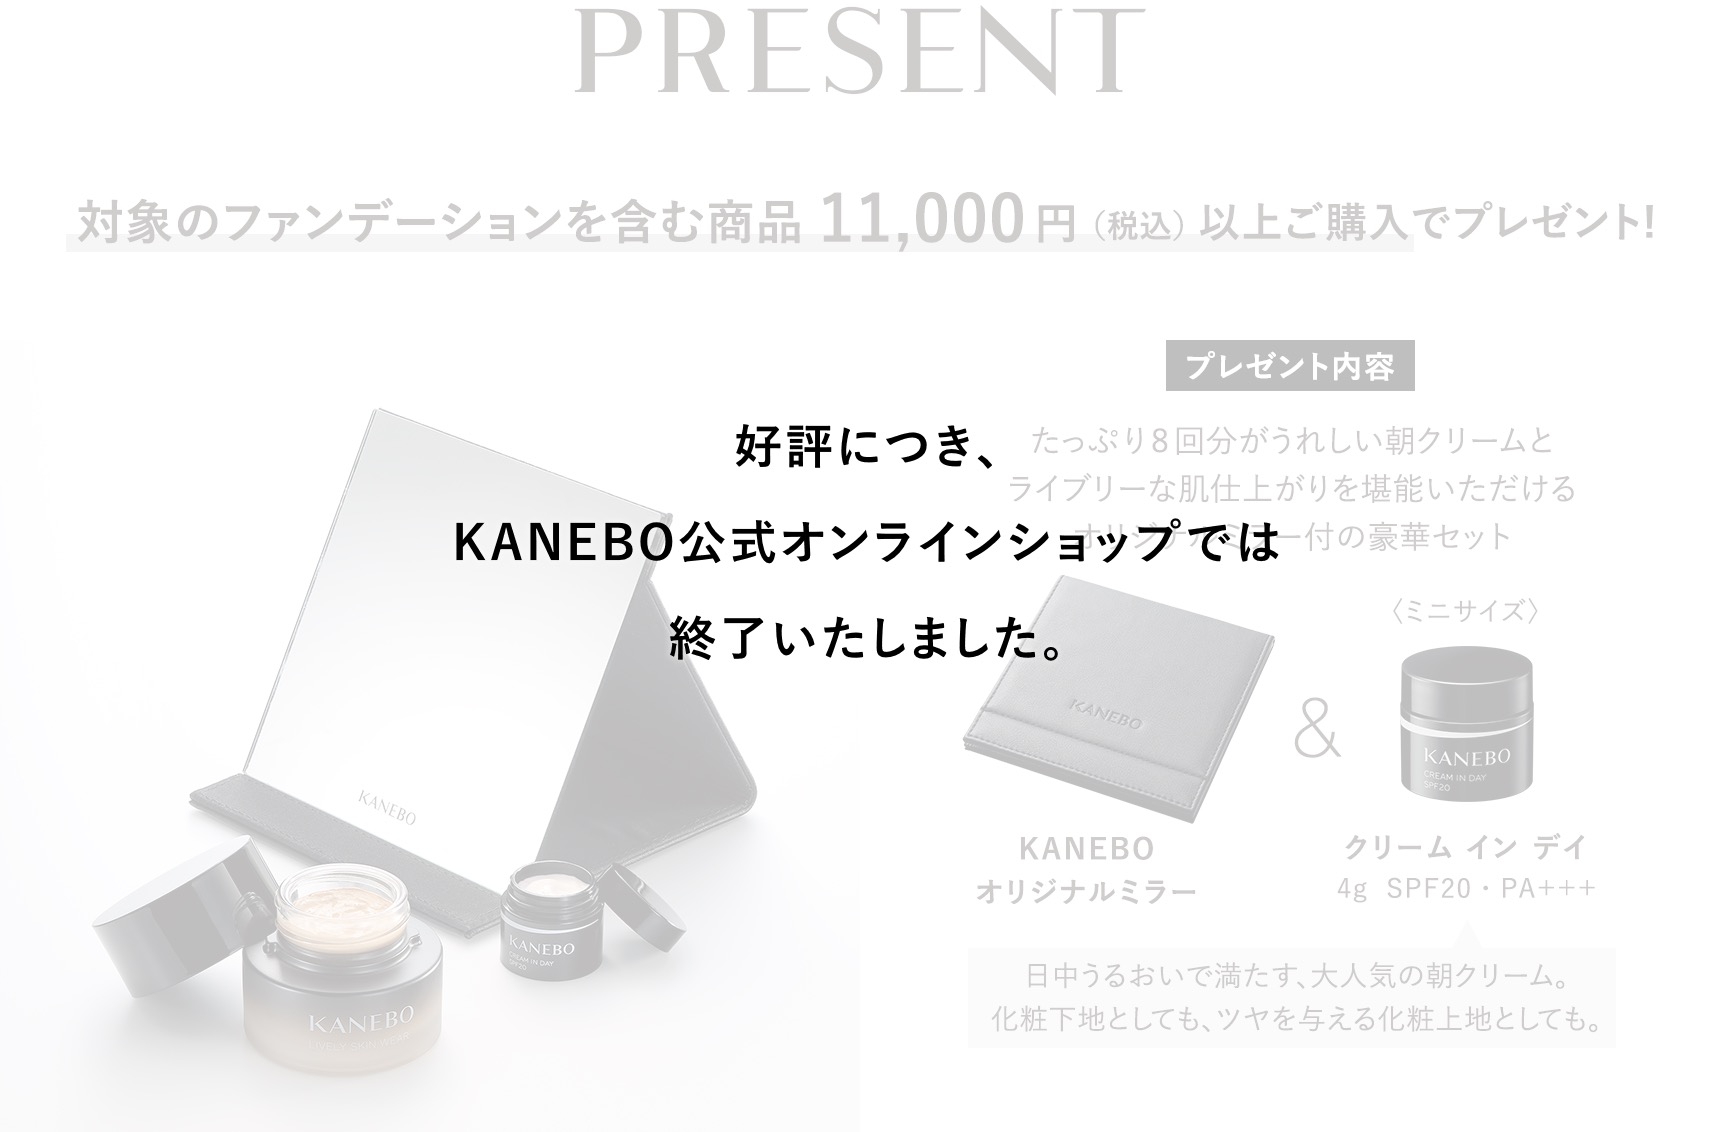 好評につき、KANEBO公式オンラインショップでは終了いたしました。